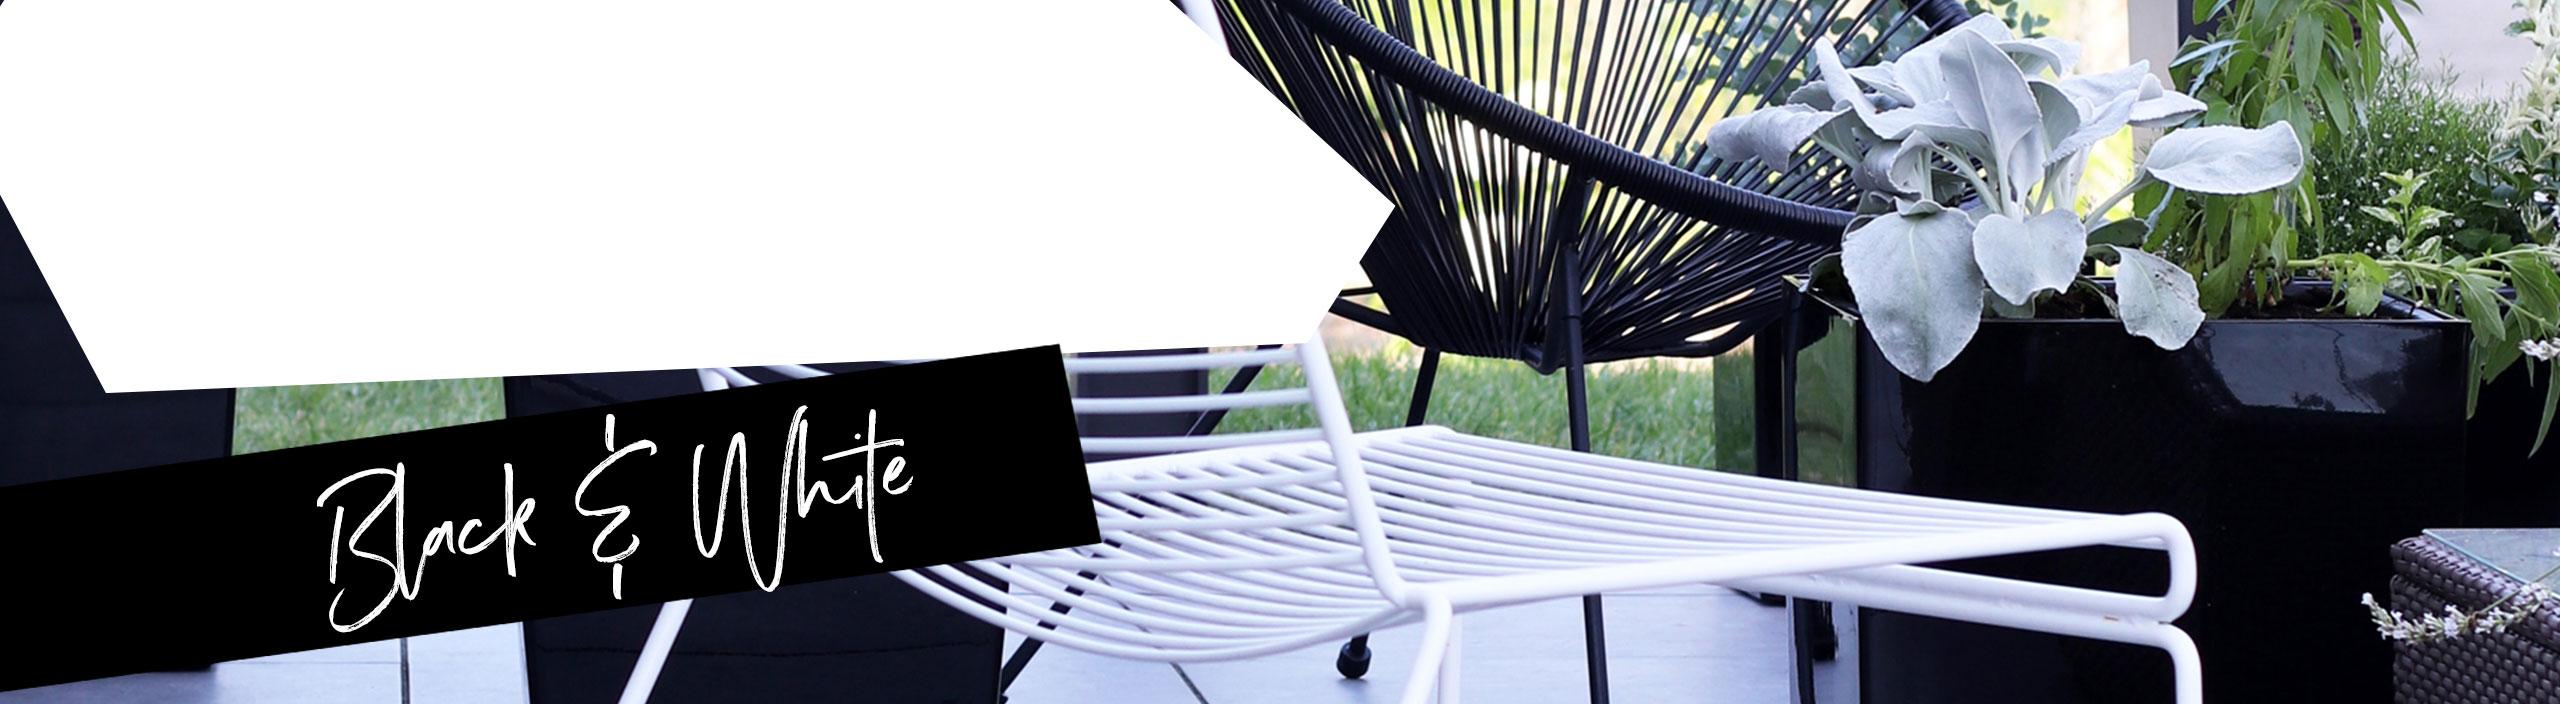 Чорне блискуче кашпо на терасі зі сталевими садовими меблями.